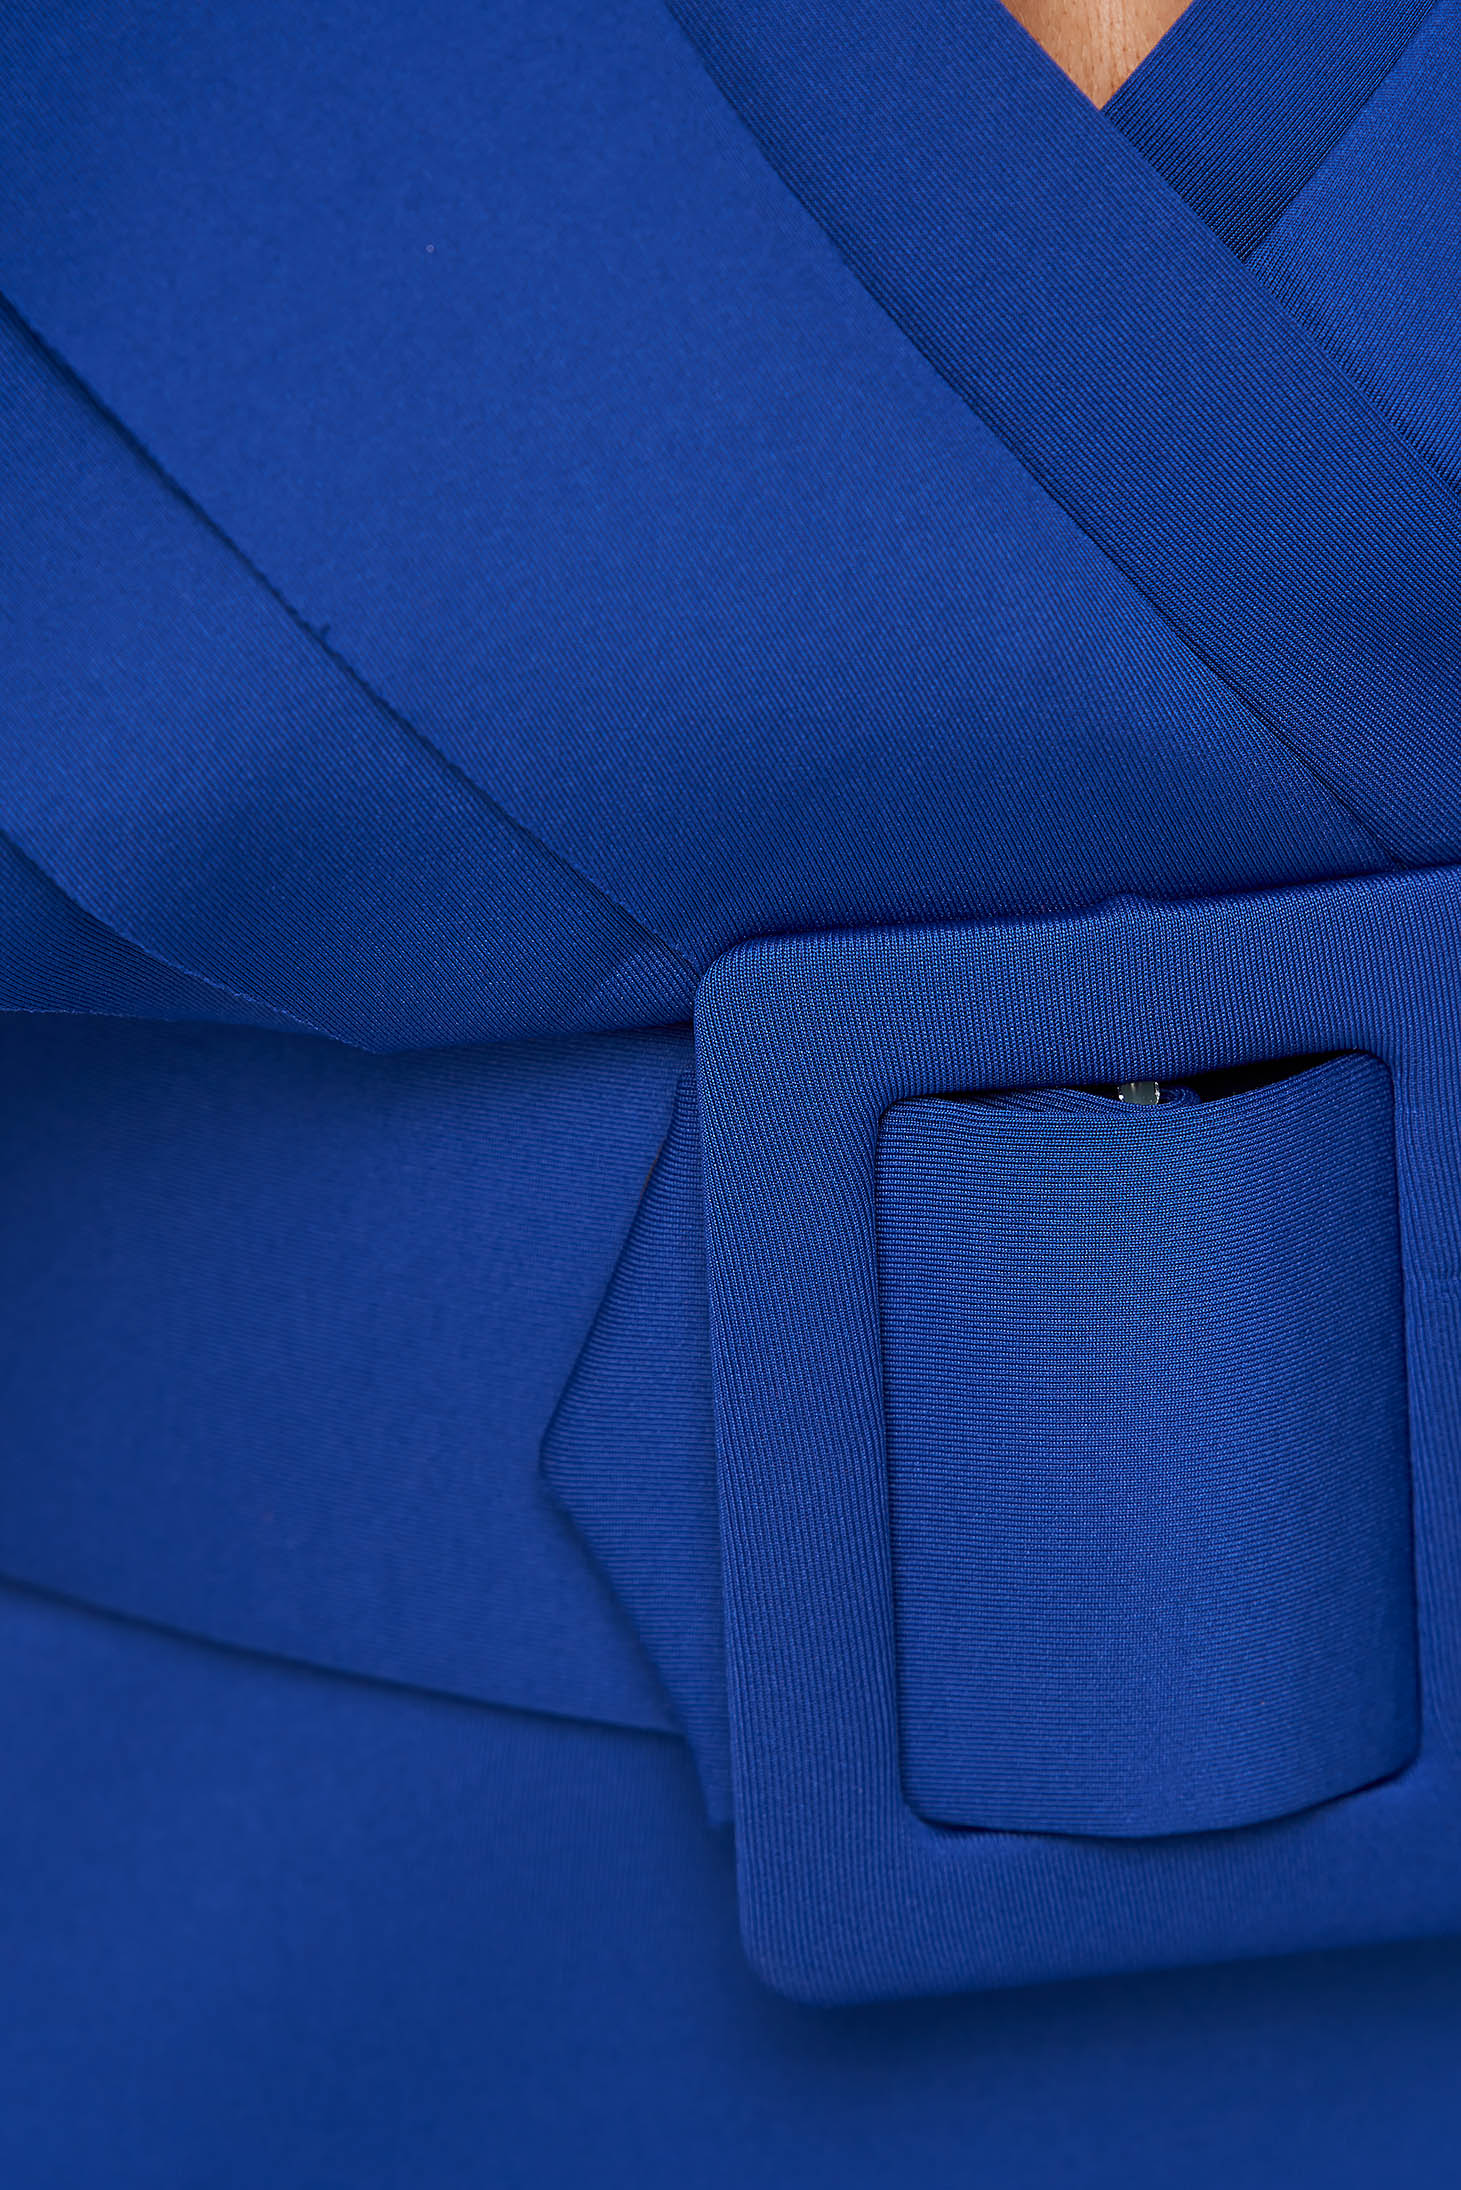 Kék ceruza ruha öv típusú kiegészítővel fodros ujjakkal 6 - StarShinerS.hu